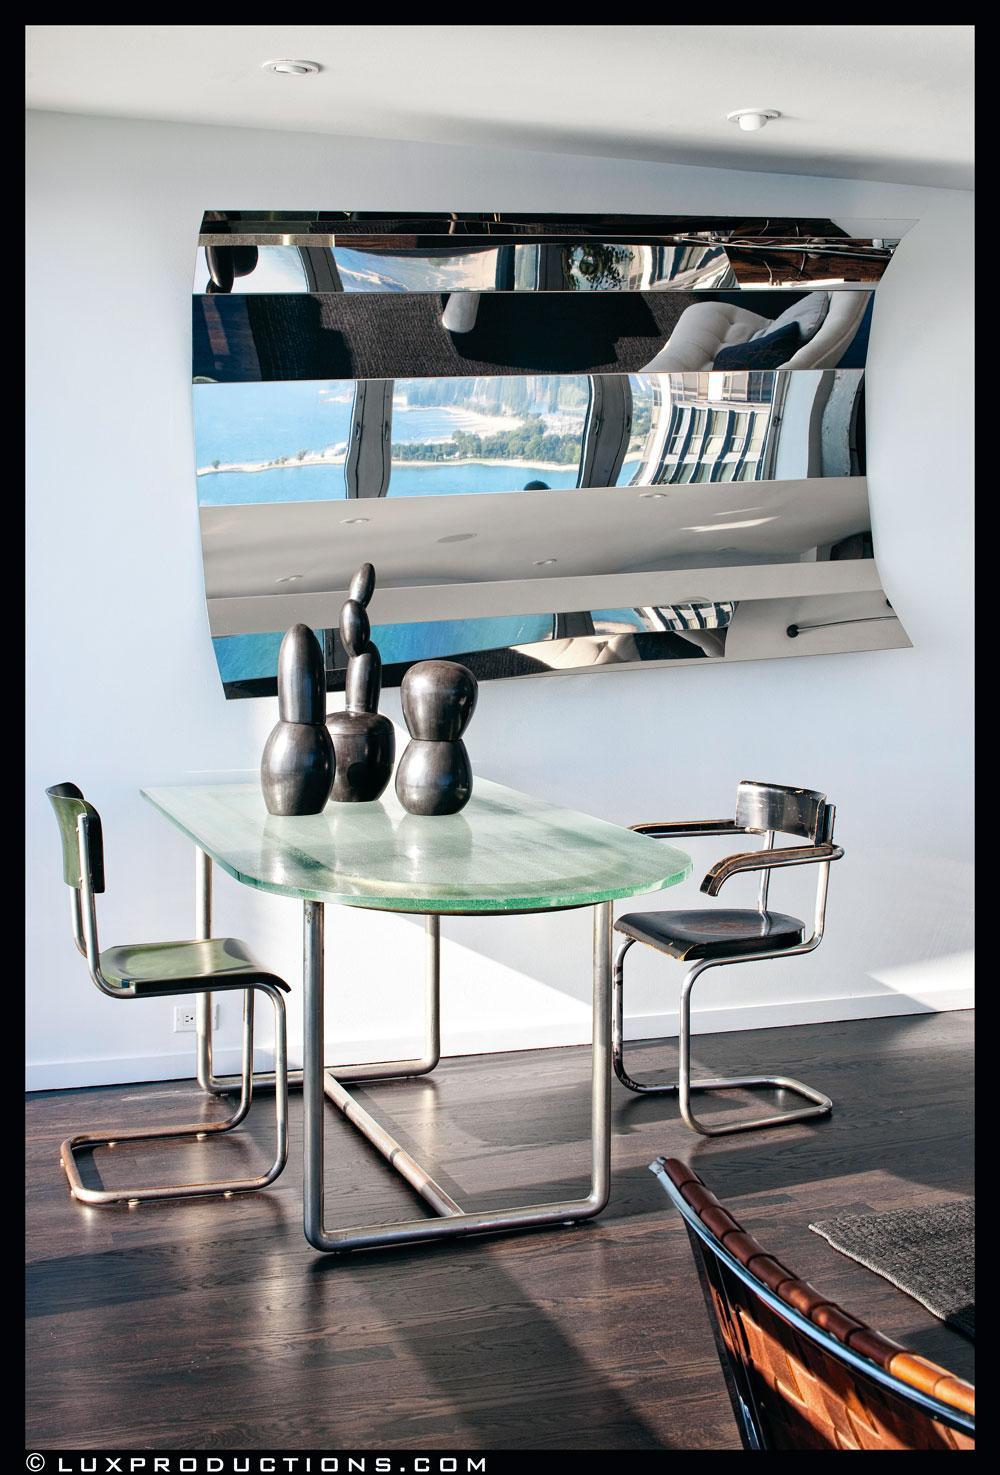 Dans le miroir en acier imaginé par Arik Levy se reflète la superbe vue sur le lac Michigan. Devant celui-ci, une table en métal et verre et des sièges de René Herbst. Les sculptures anonymes datent des années 60.